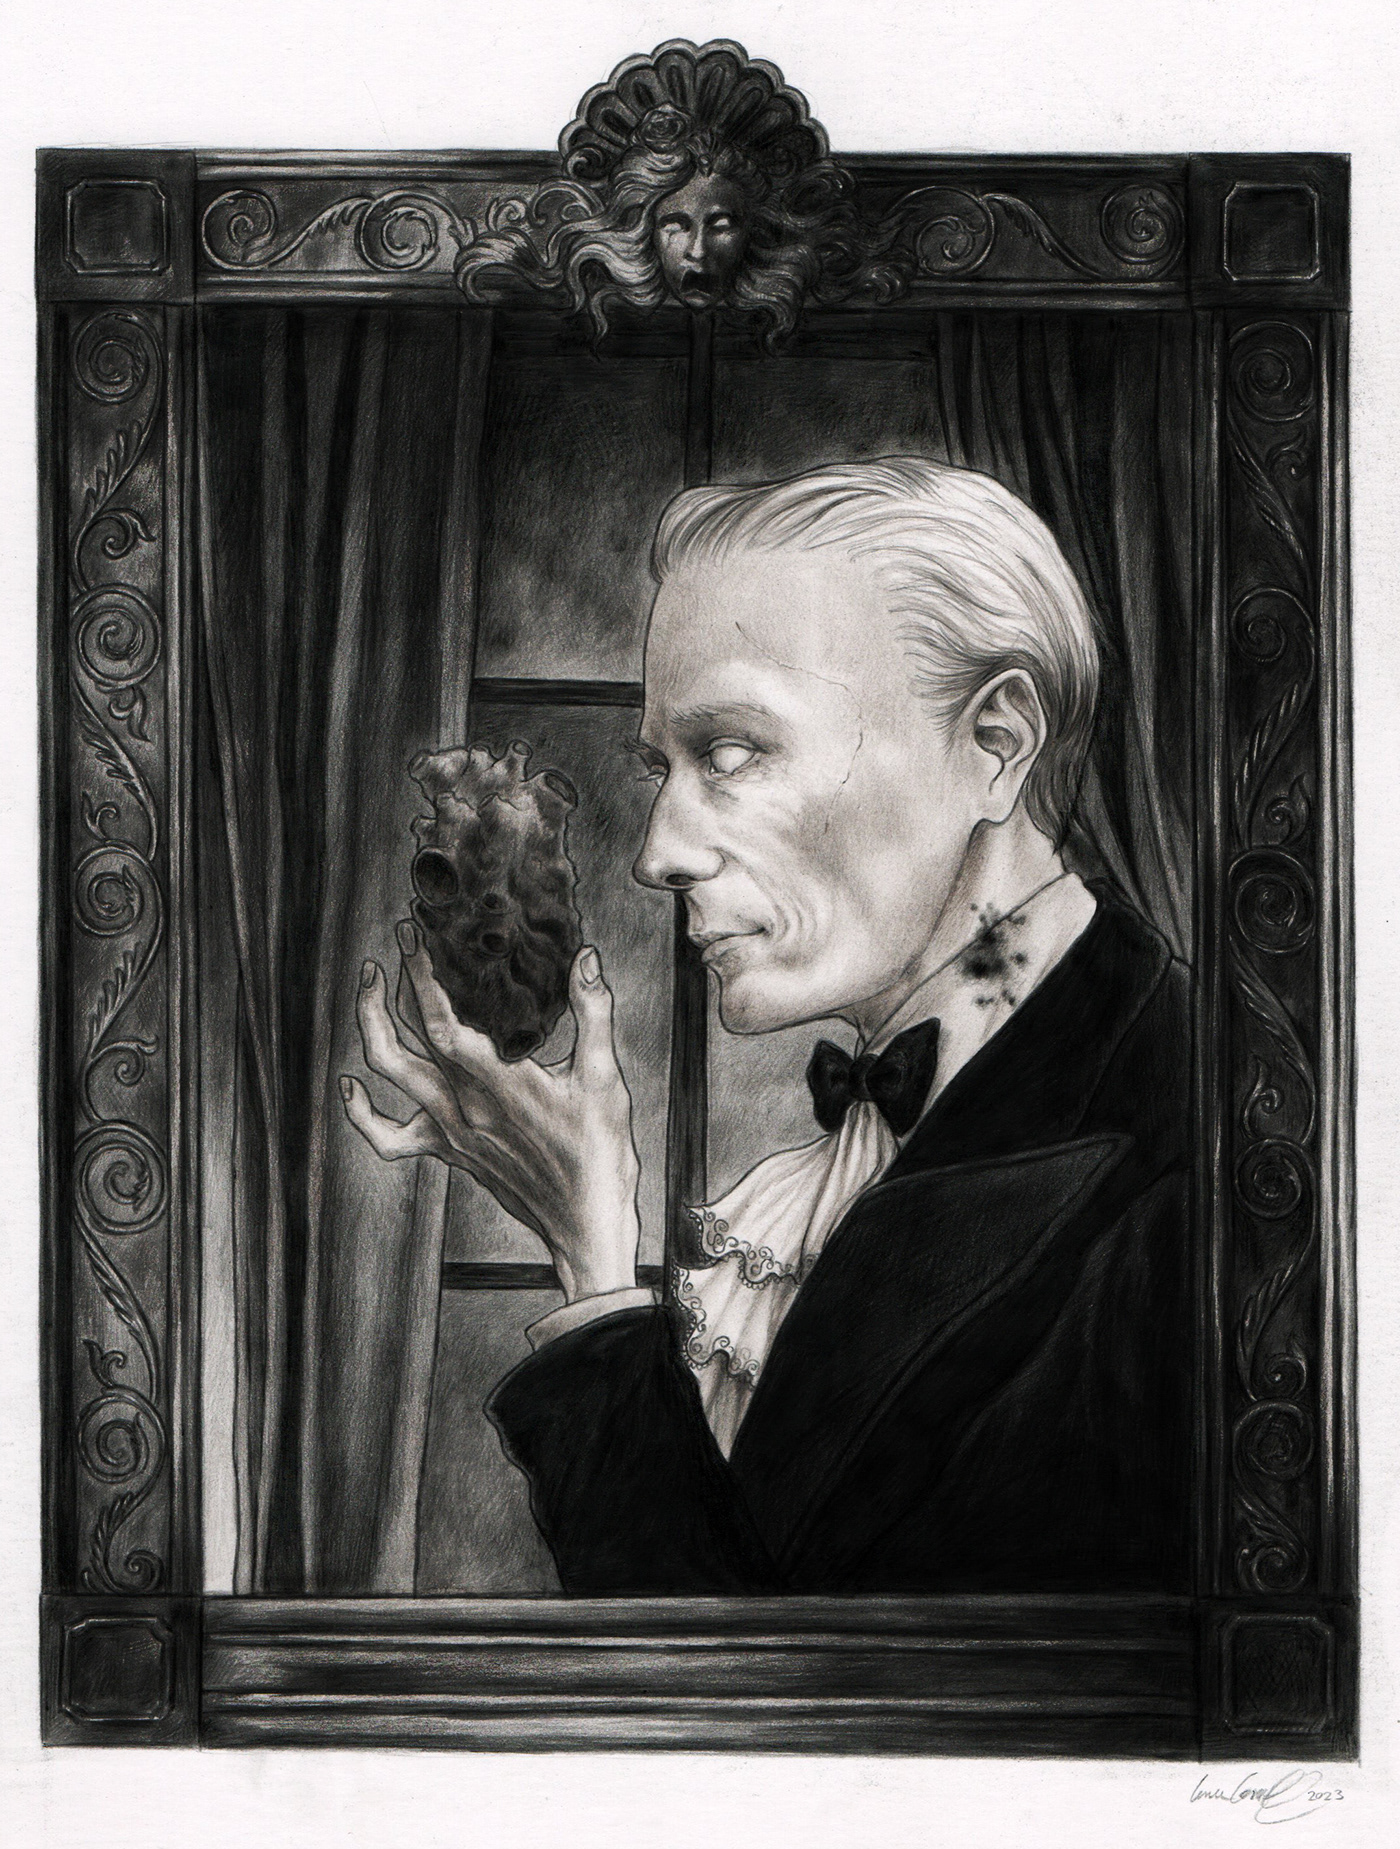 dark art black and white portrait morbid death